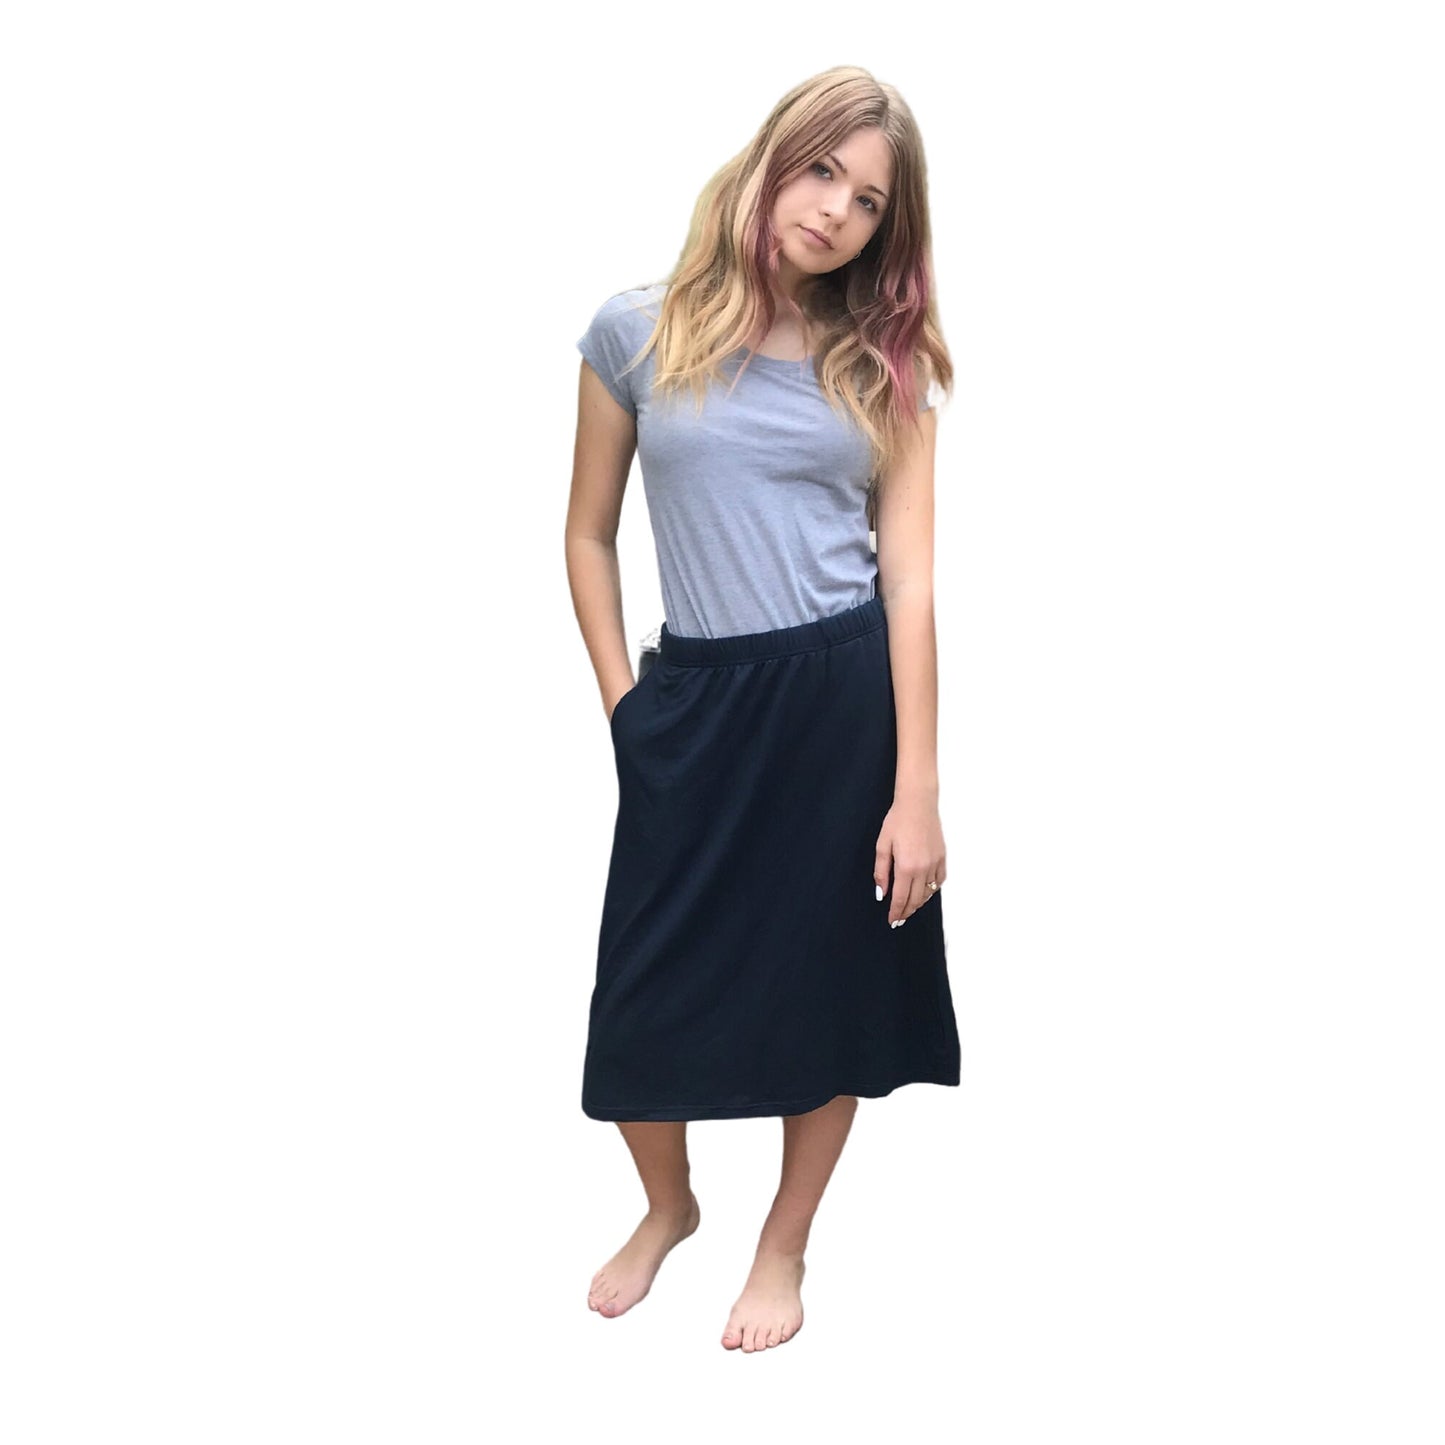 Track Warmup Pants as a Skirt Modest Tznius Skirt Exercise Skirt Athleisure Skirt Beach Skirt Golf Skirt, Tennis Skirt Soccer Skirt PE Skirt